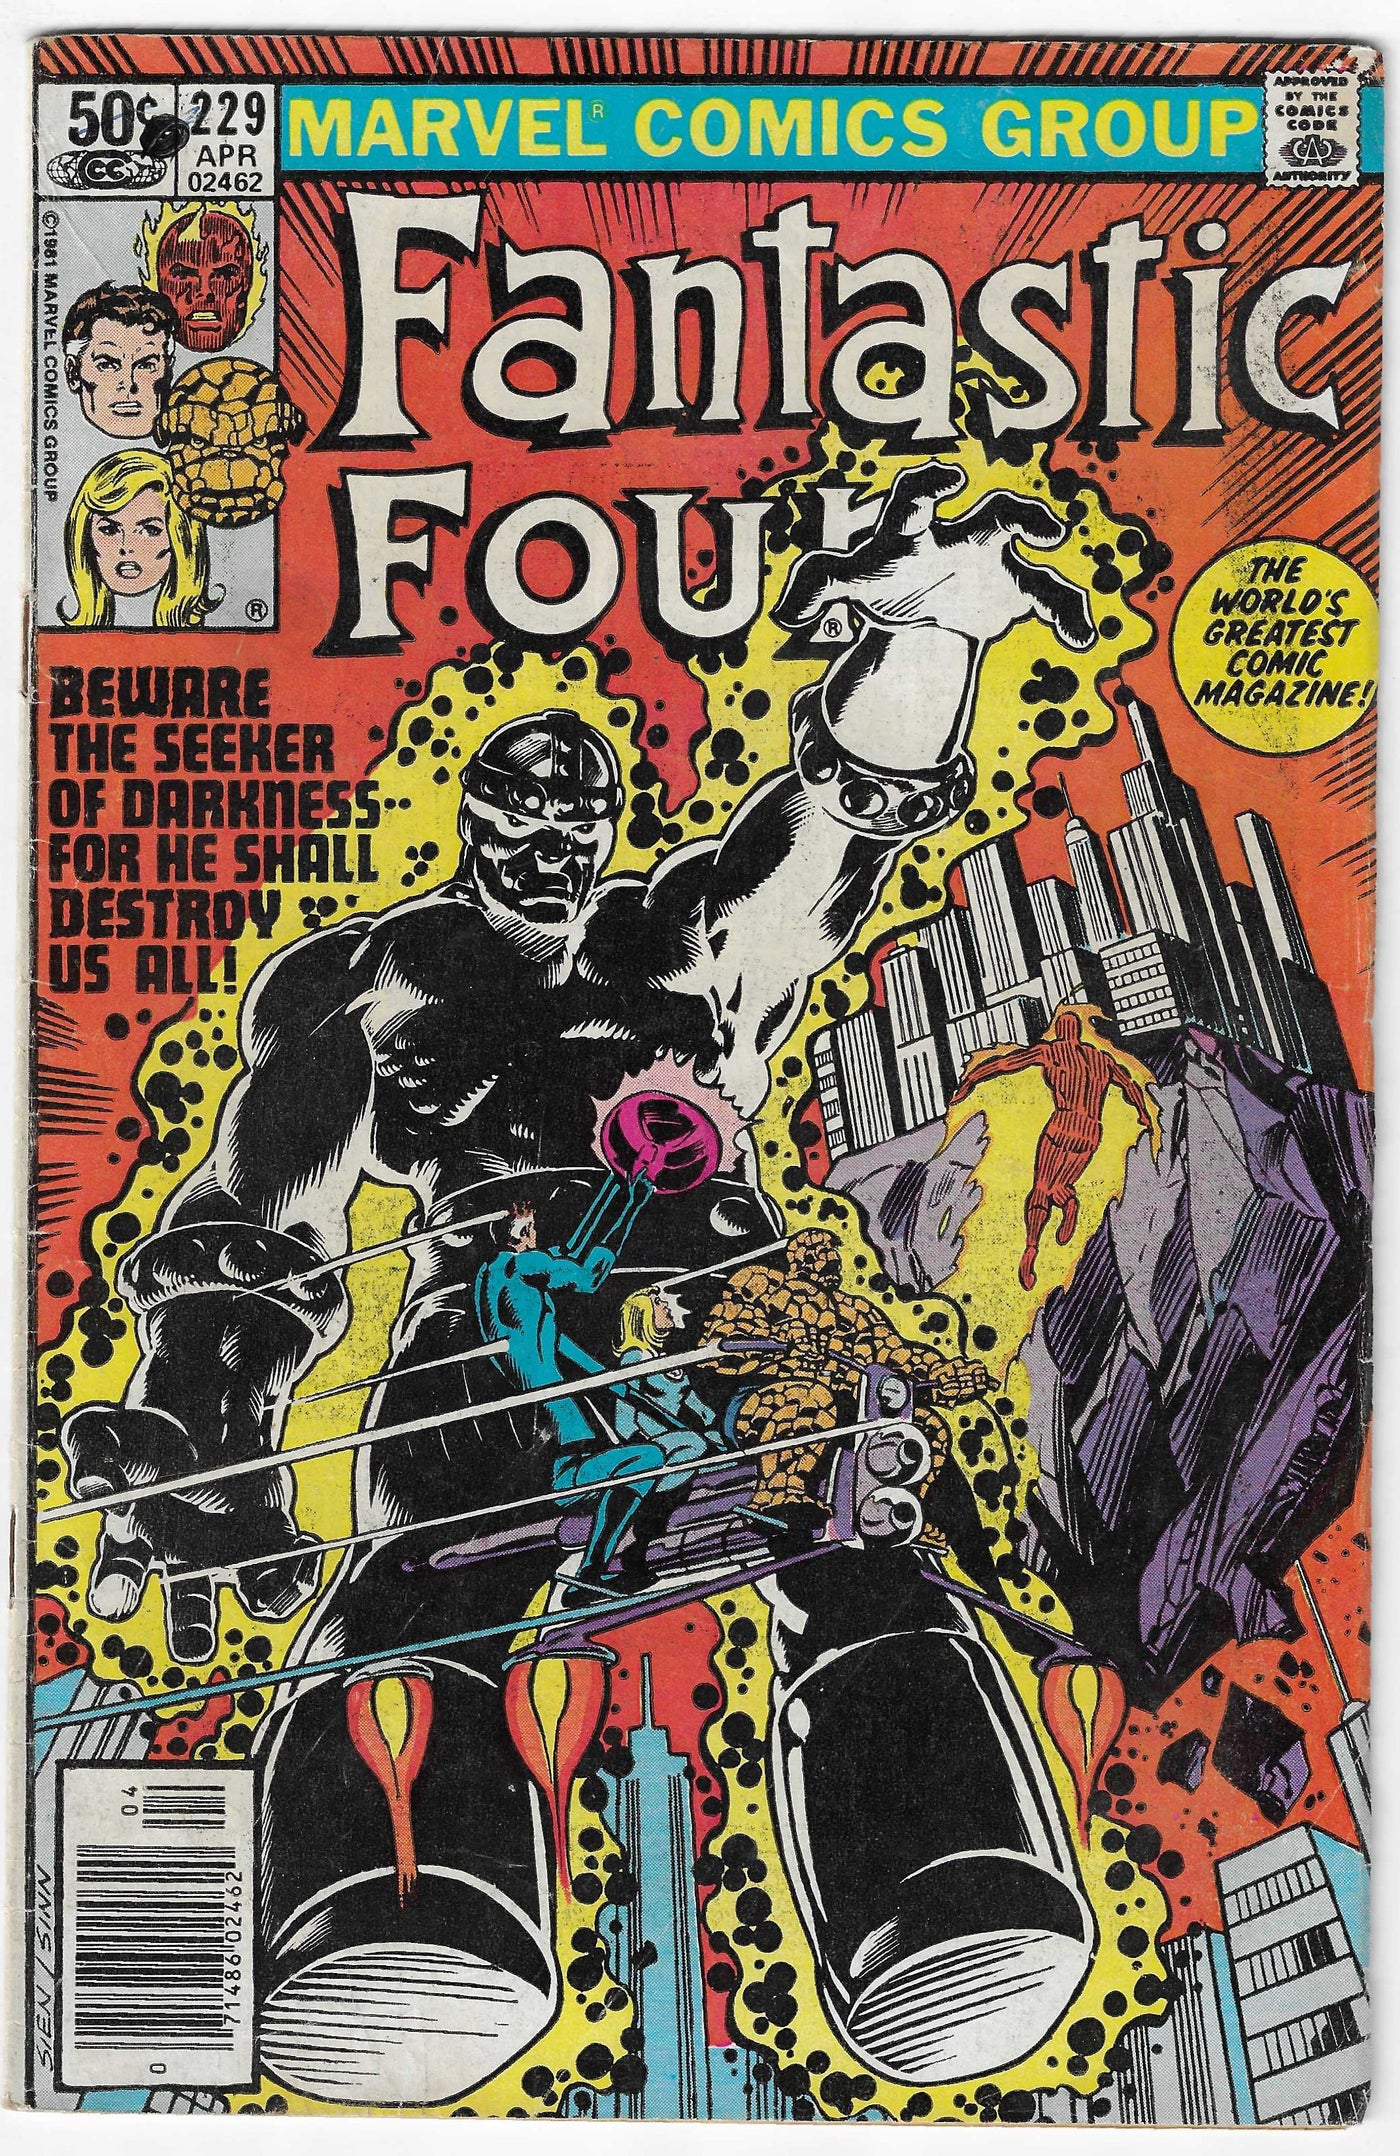 Fantastic Four (Volume 1) #229